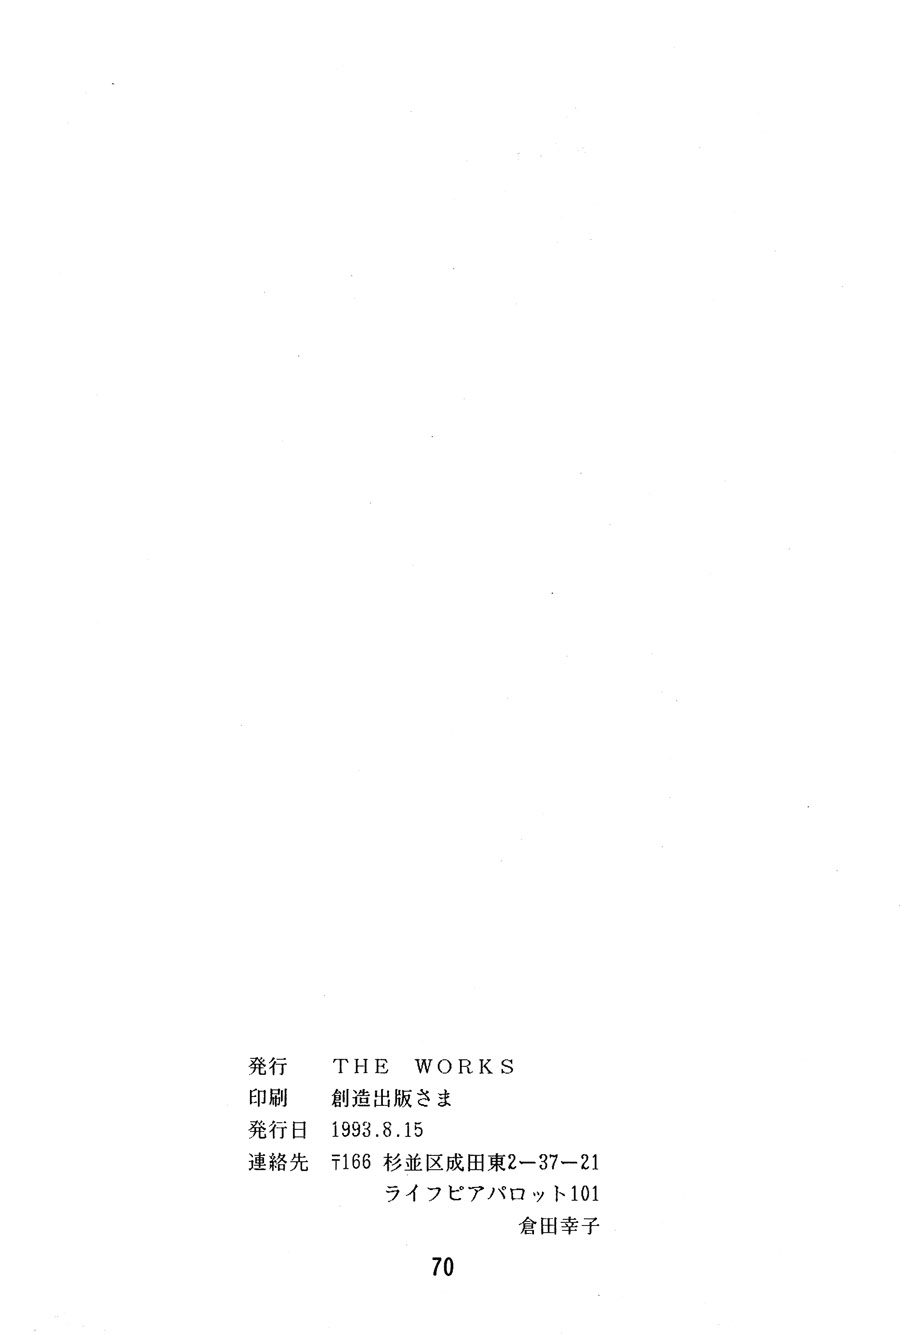 【漫画】The Works/ 藏田凑/狩之井树《魑魅魍魉传》 Img_9704